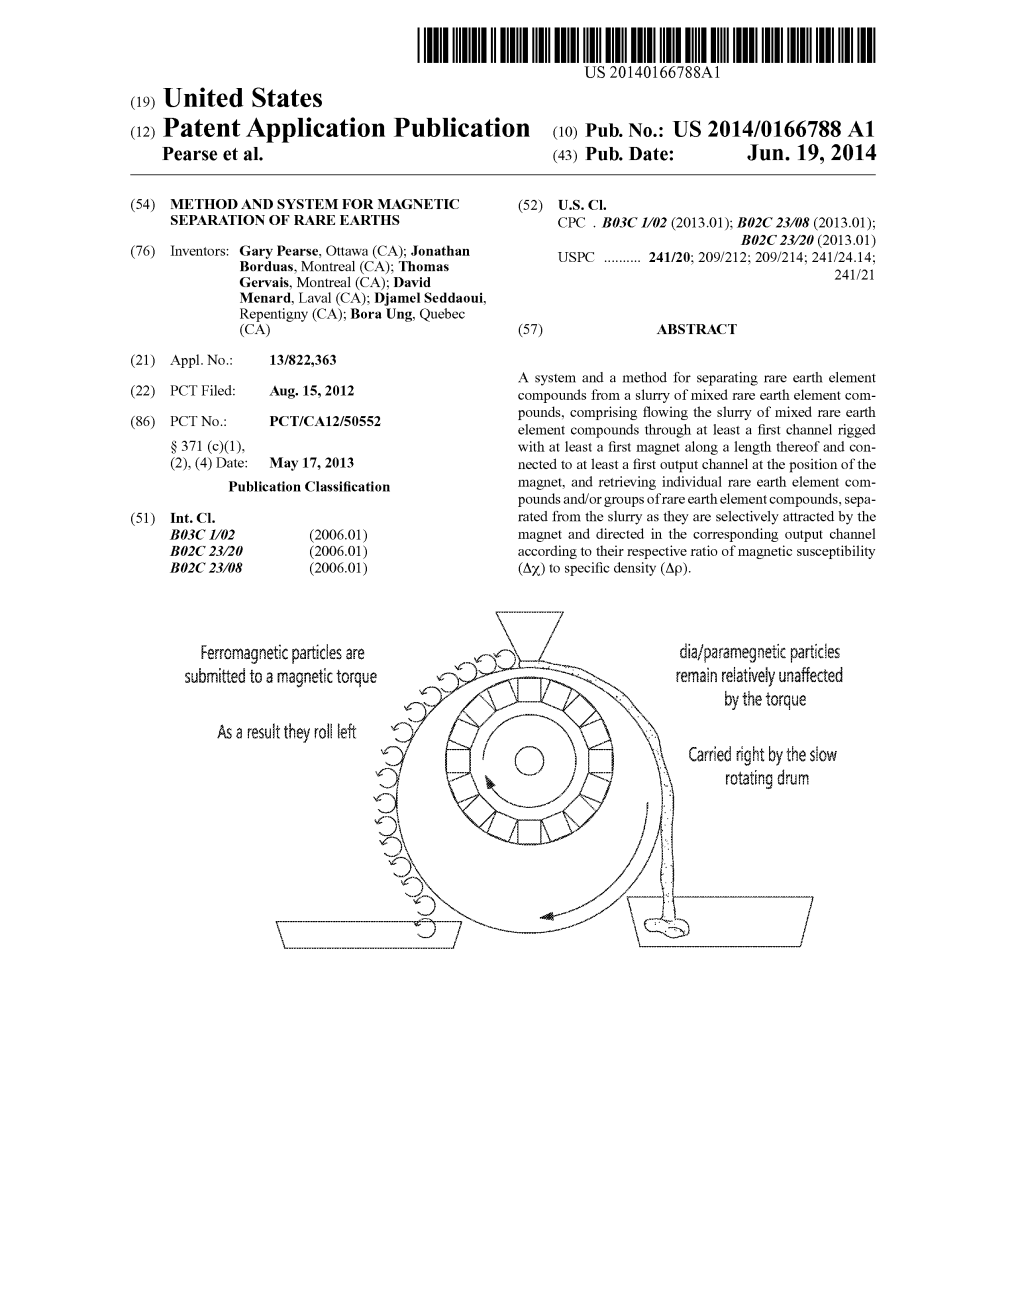 (12) Patent Application Publication (10) Pub. No.: US 2014/0166788 A1 Pearse Et Al